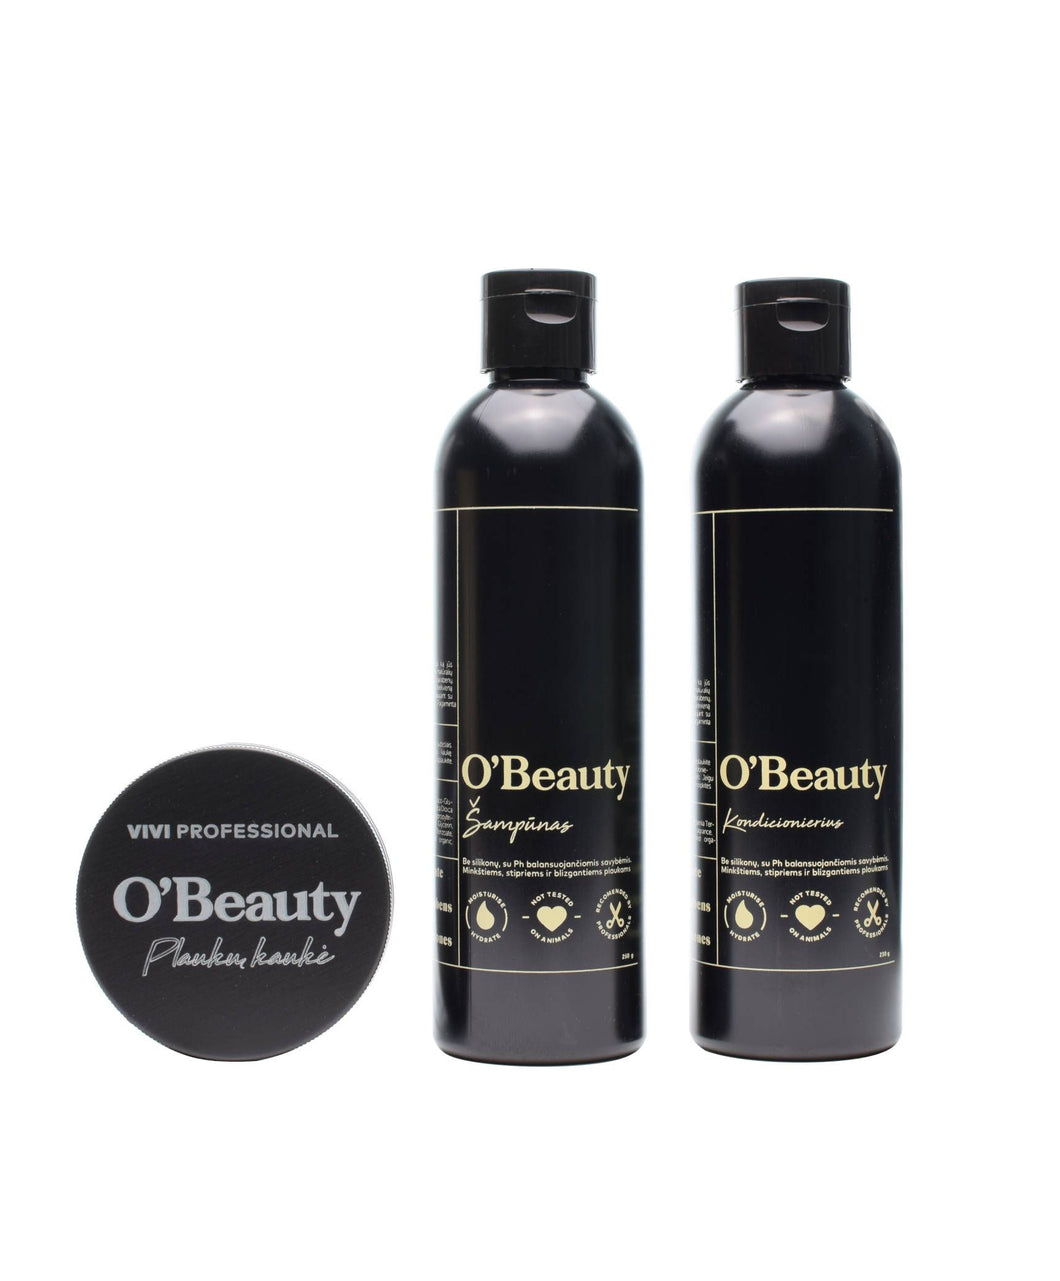 O'Beauty natural hair care set